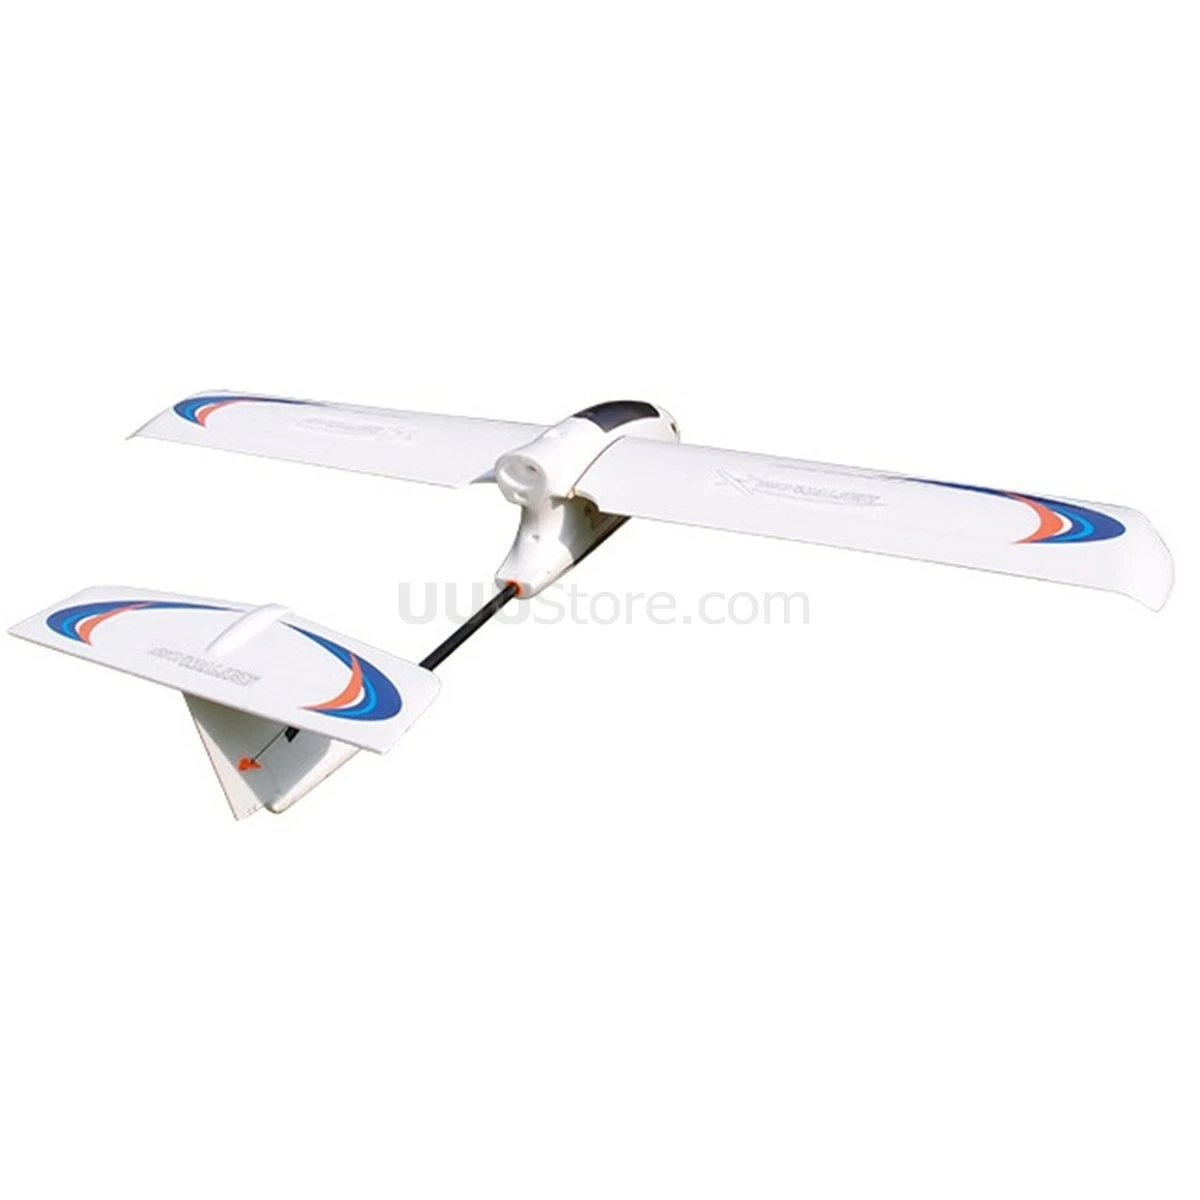 SkyWalker 1830mm T-Tail FixWing FPV Lėktuvas Nuotolinio Valdymo Elektros Sklandytuvas Lėktuvo RC Modelis